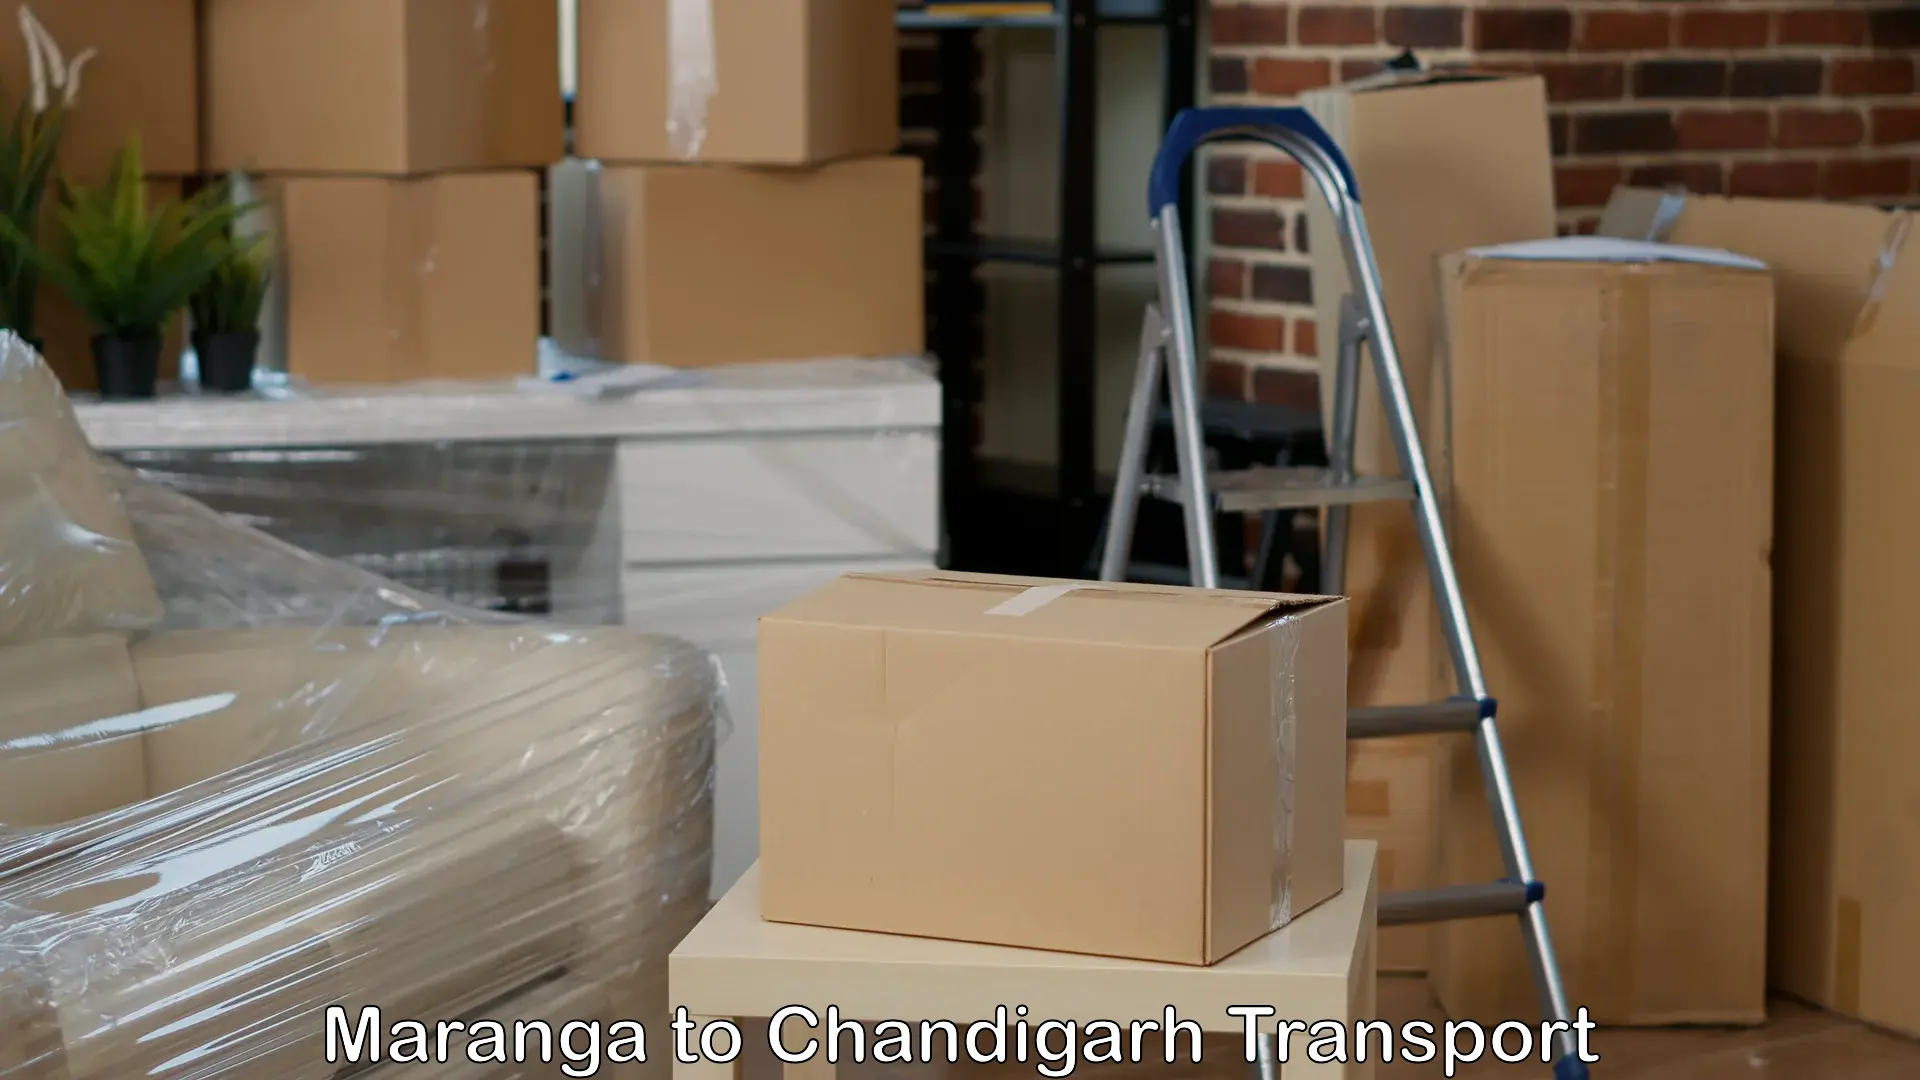 Bike transport service Maranga to Chandigarh